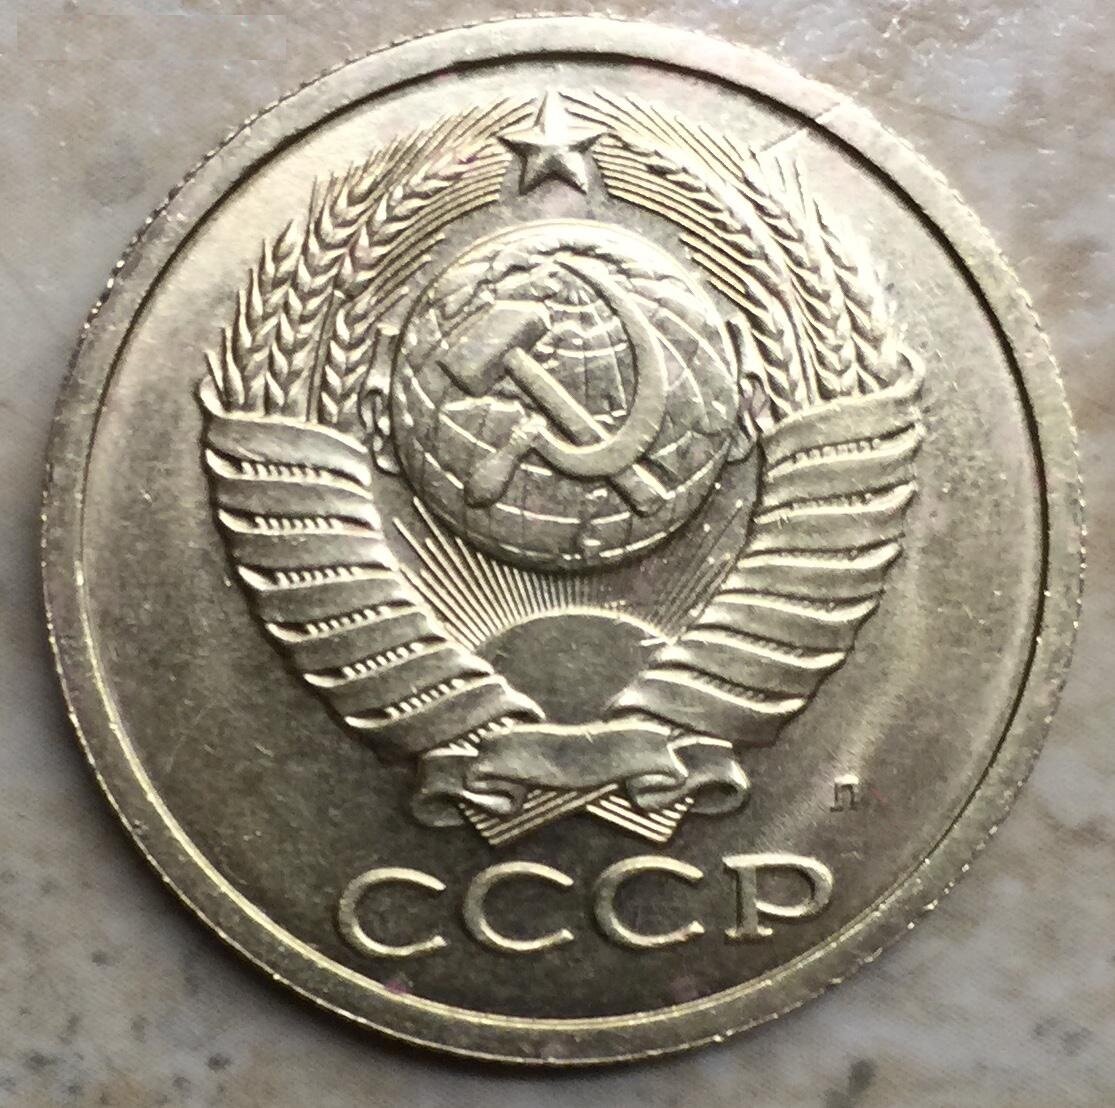 7000 в рублях. Монеты СССР односторонний чекан. 5 Копеек 1991 года. 5 Копеек односторонний чекан. 5 Копеек 1991 года ЛМД.